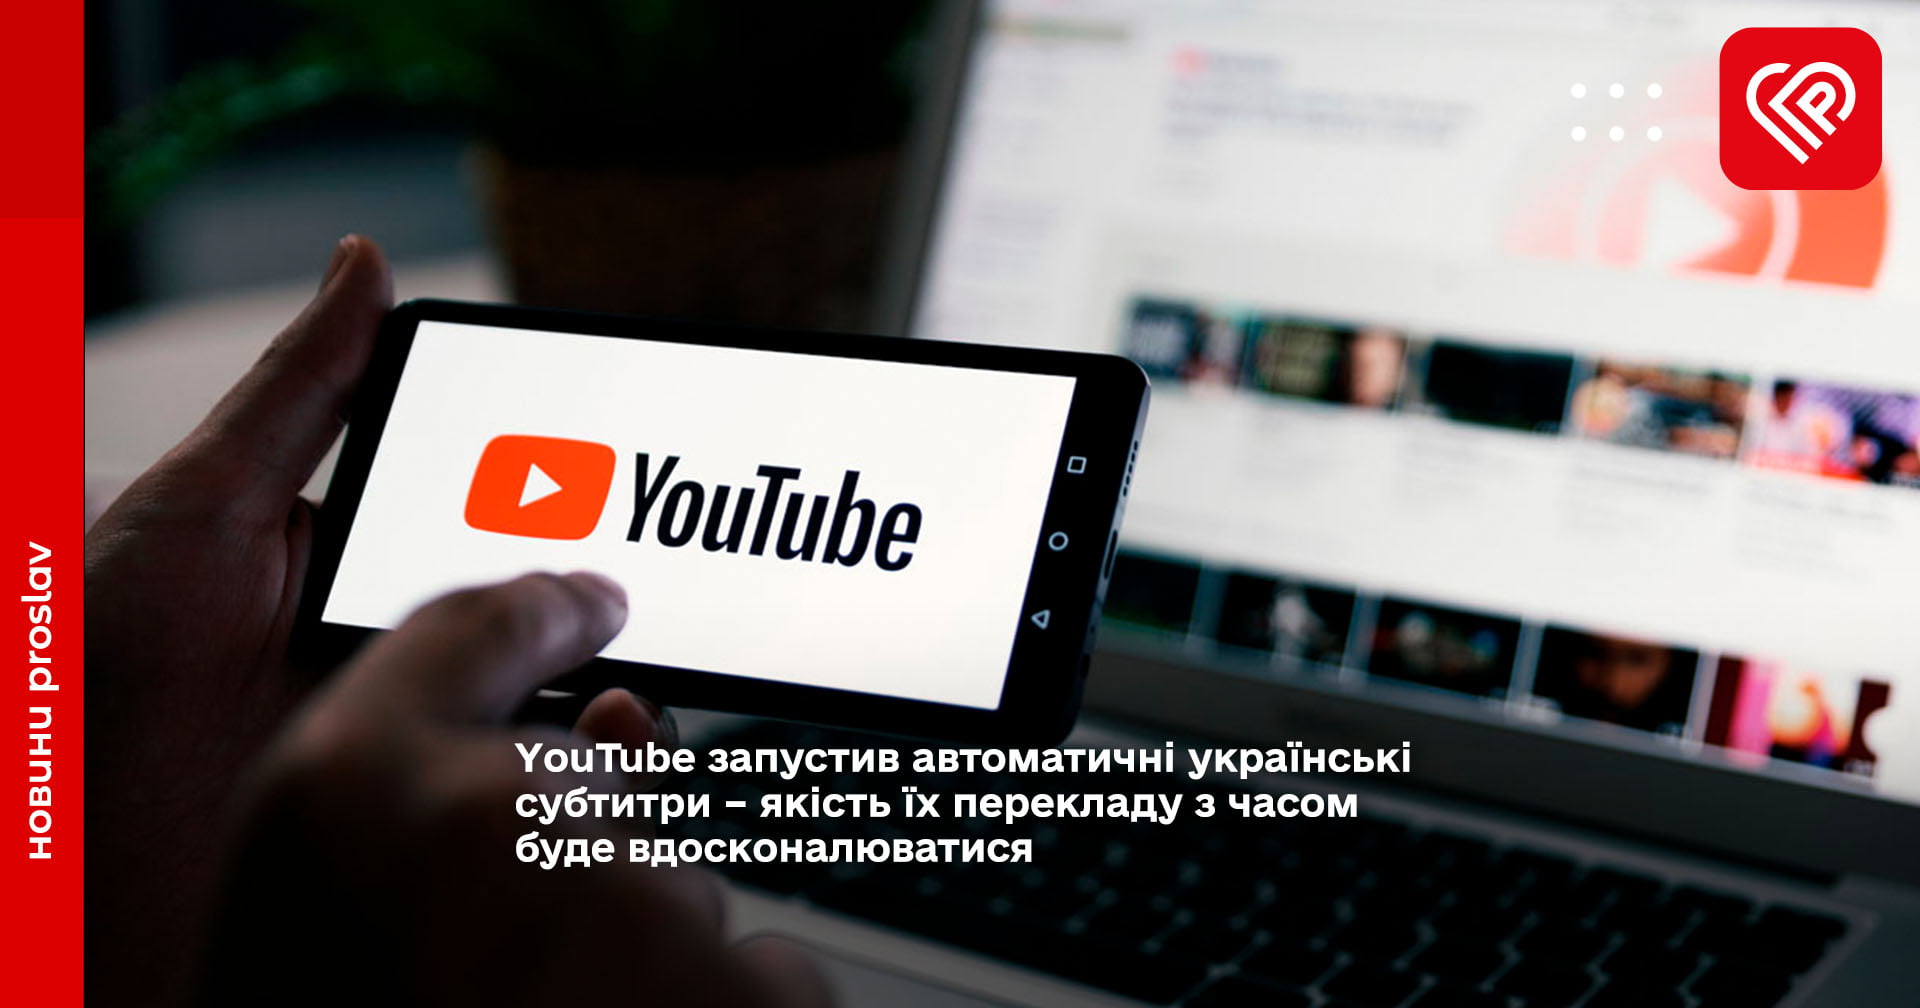 YouTube запустив автоматичні українські субтитри – якість їх перекладу з часом буде вдосконалюватися